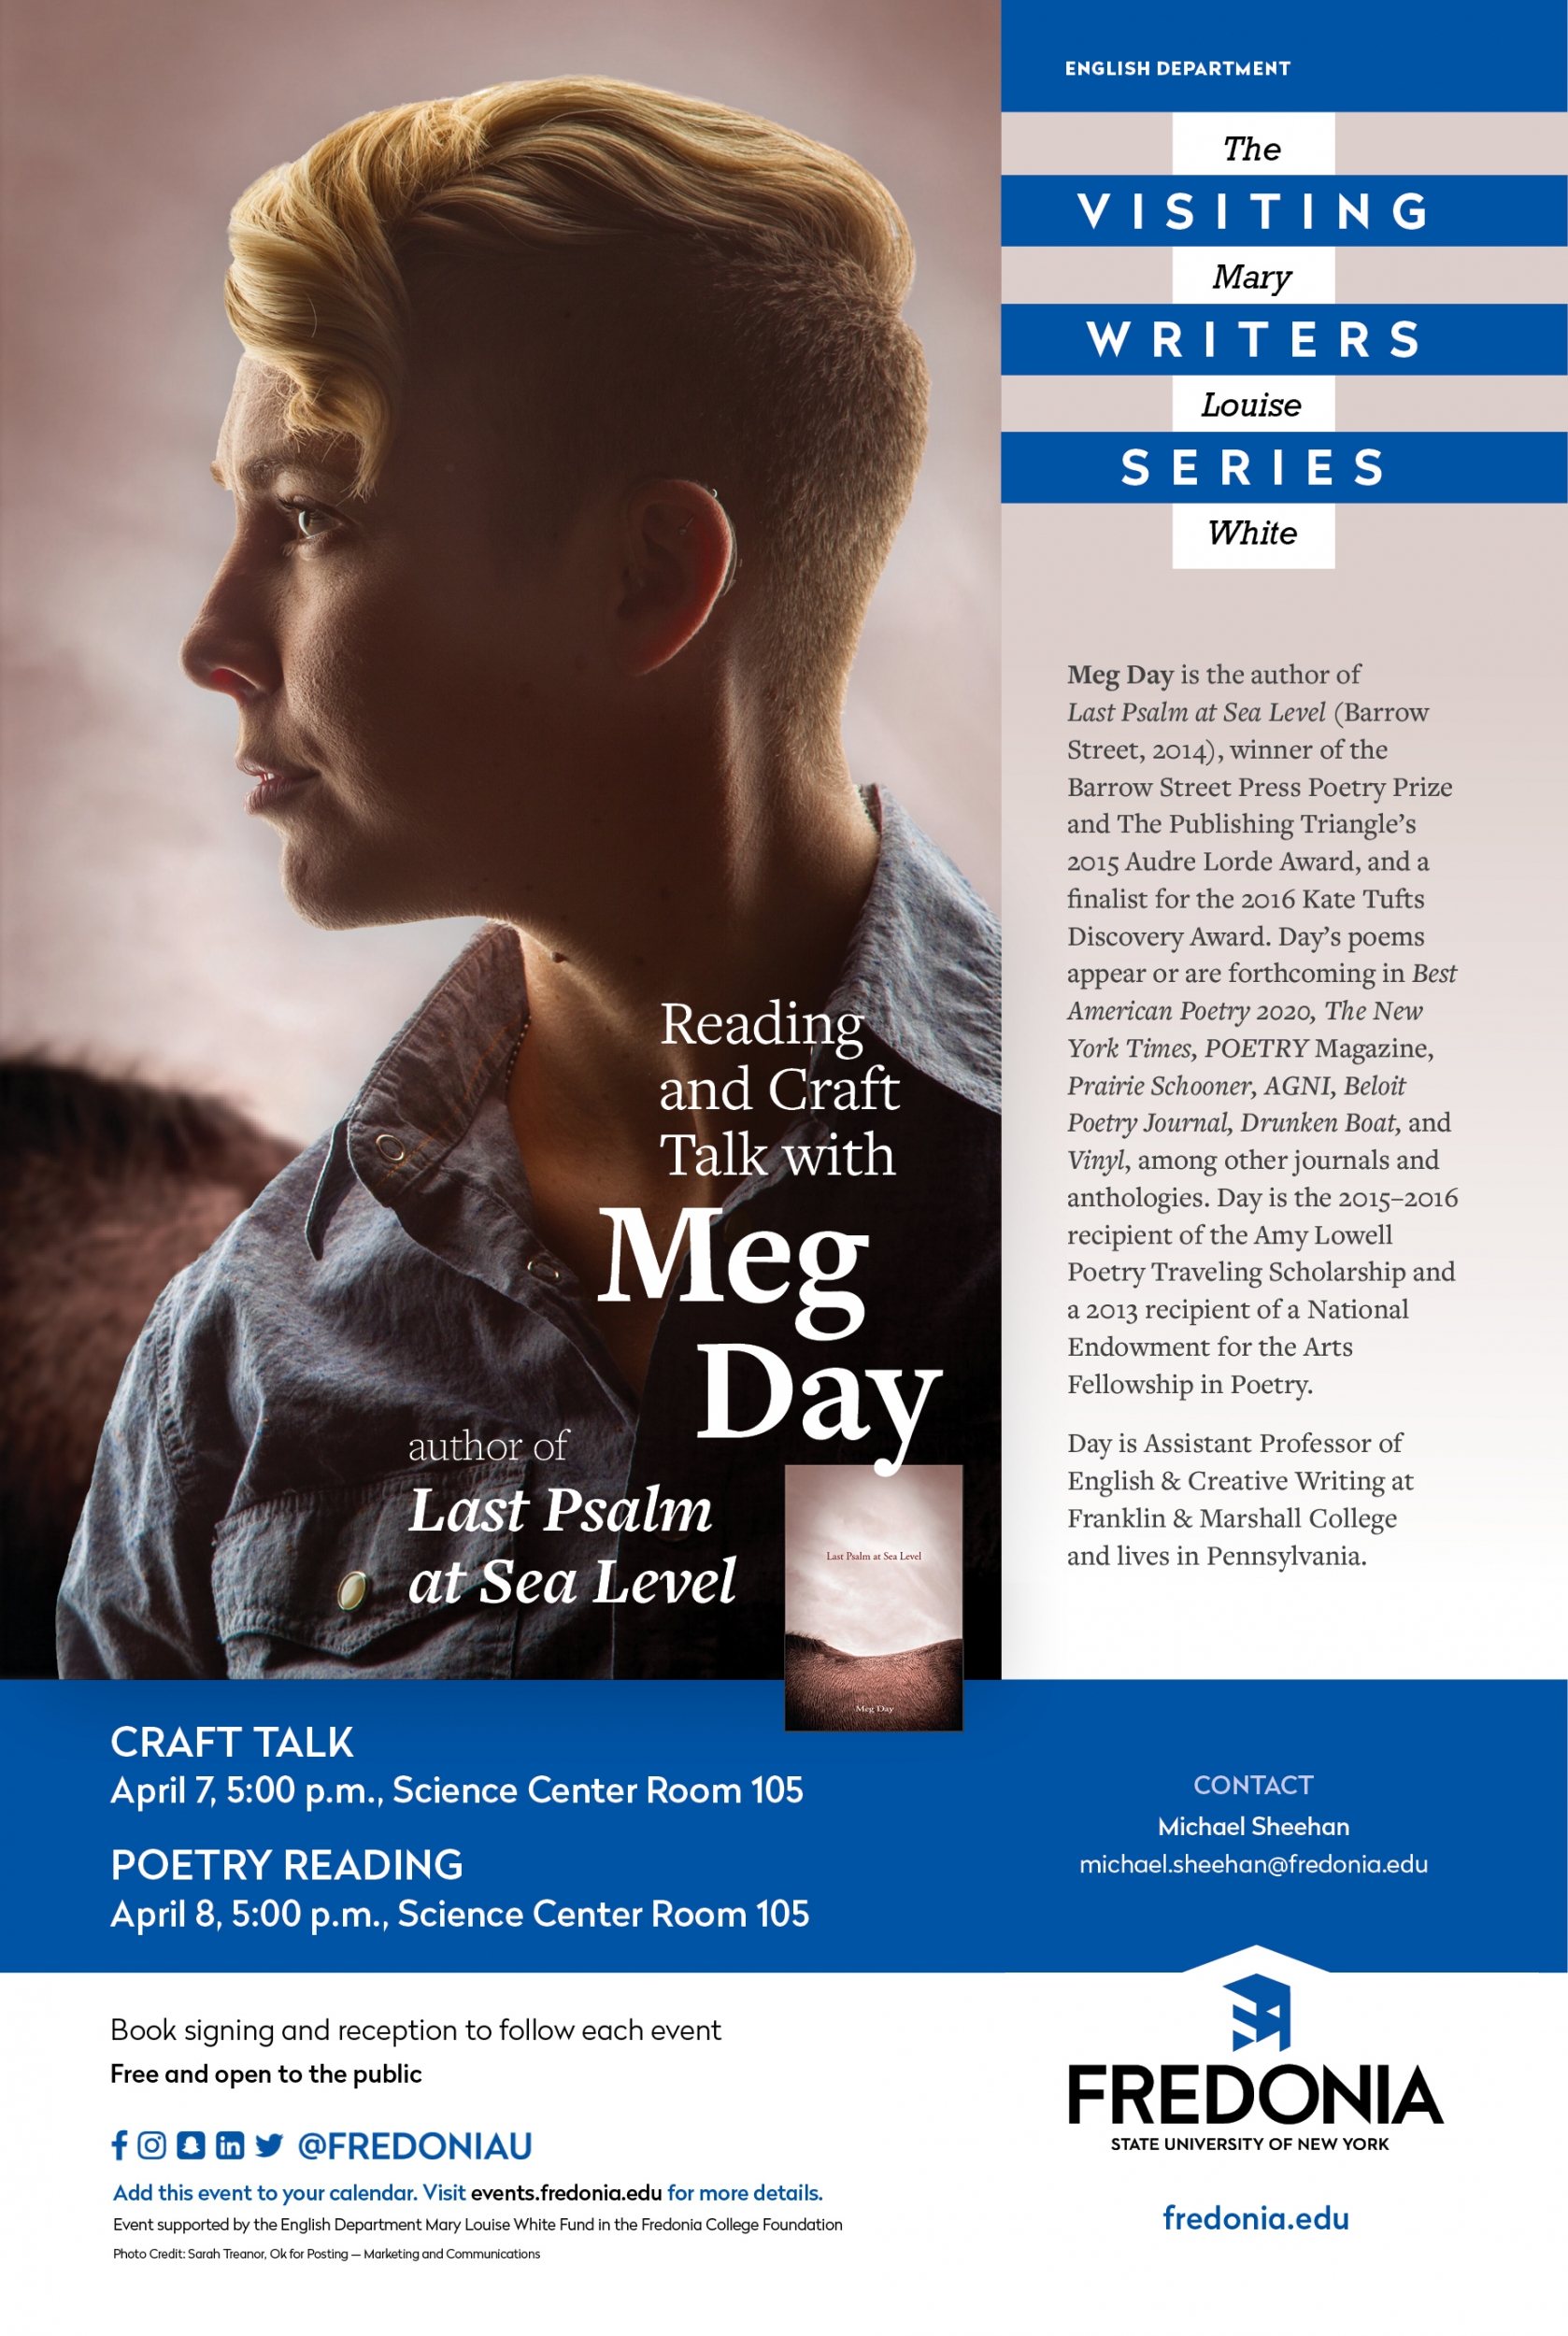 梅格的一天,玛丽露易丝白色访问作家系列,2020年4月